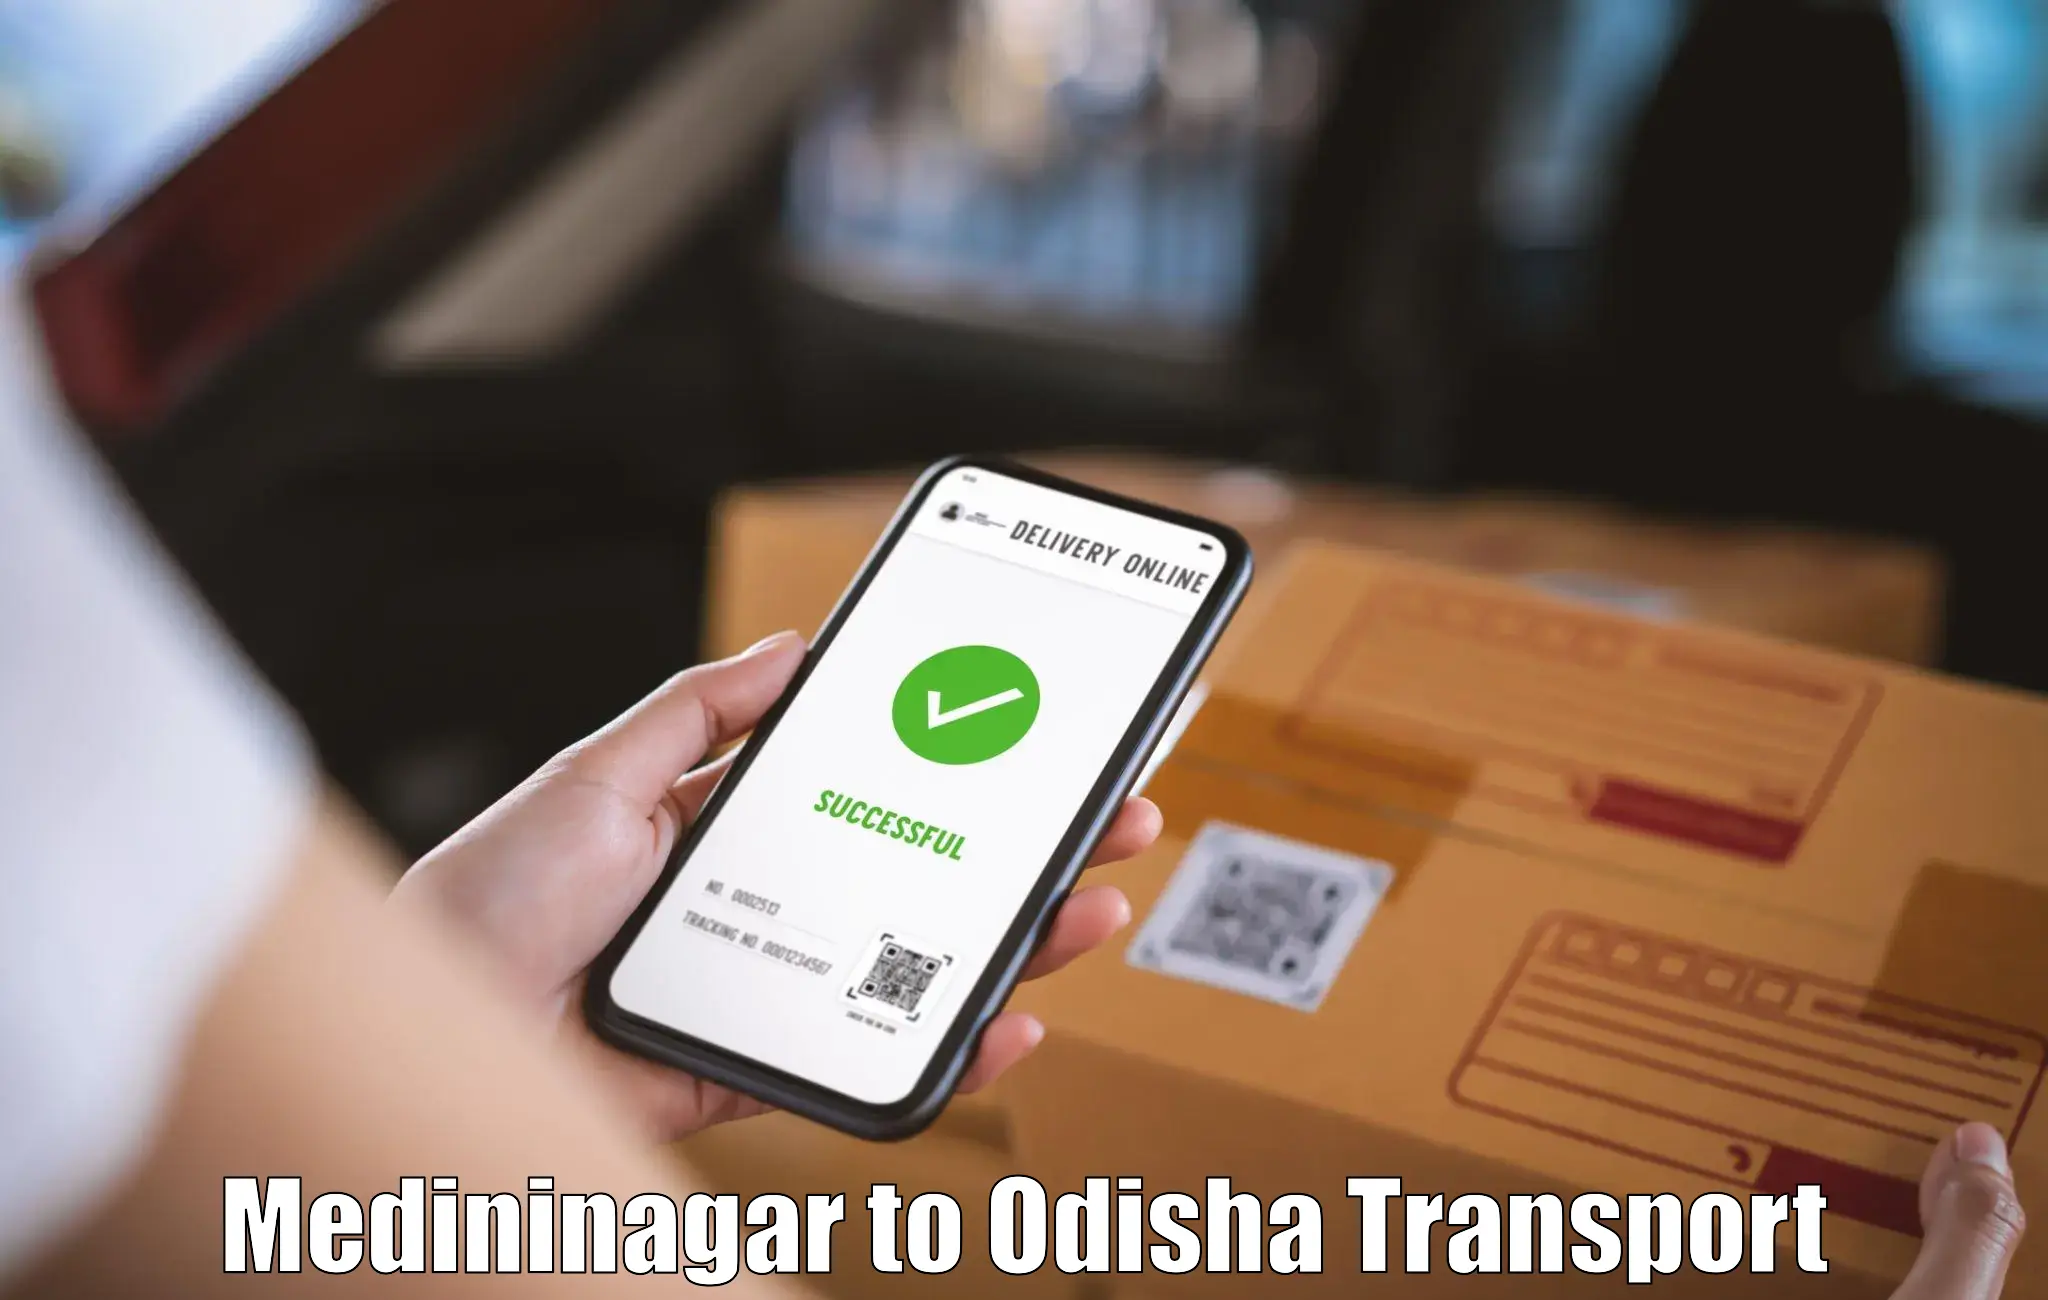 Transport in sharing Medininagar to Bargarh